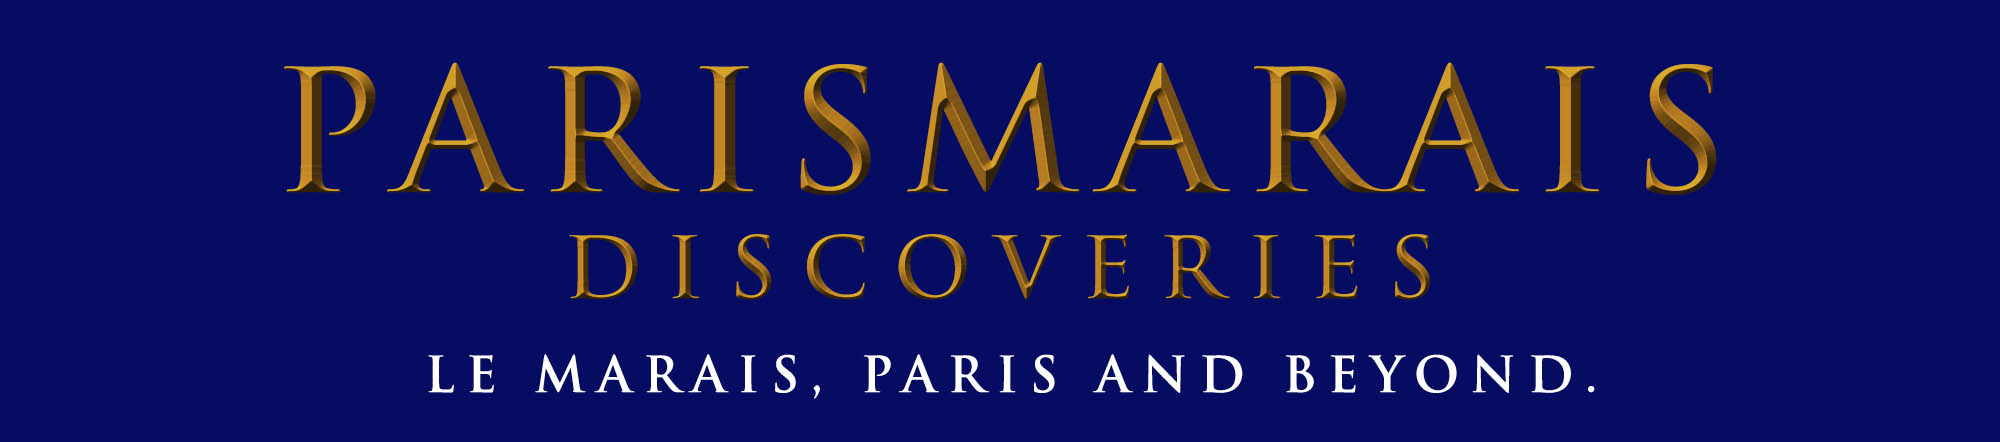 PARISMARAIS DISCOVERIES - LE MARAIS PARIS AND BEYOND